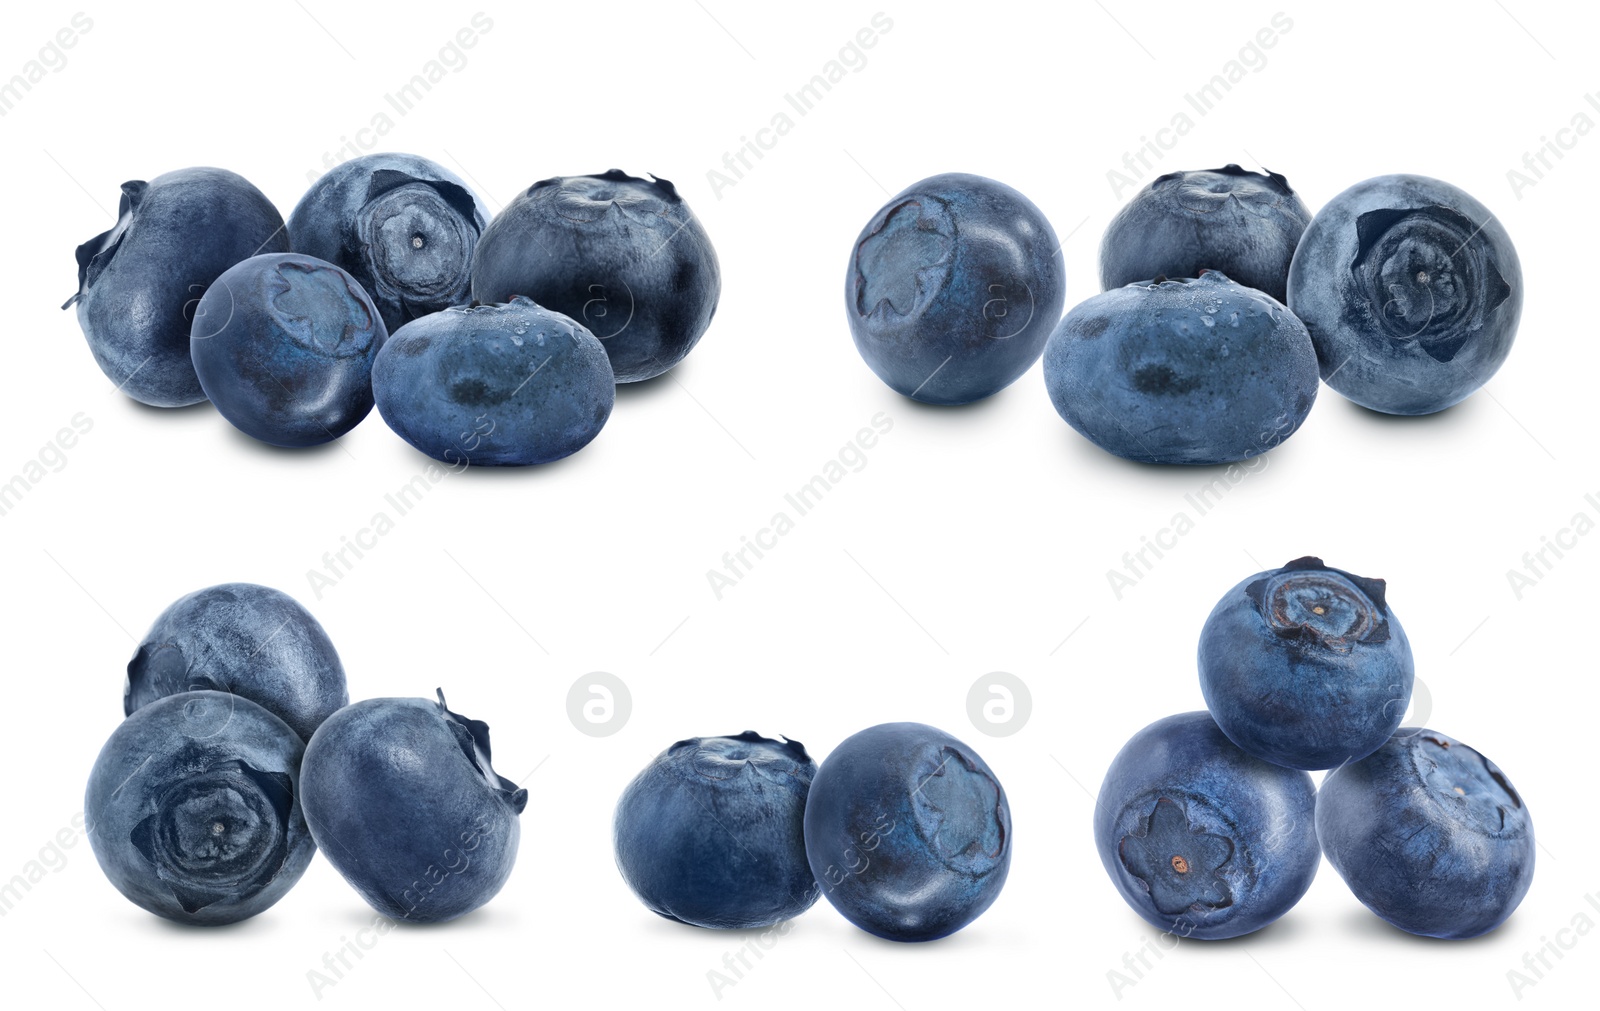 Image of Set of fresh ripe blueberries on white background